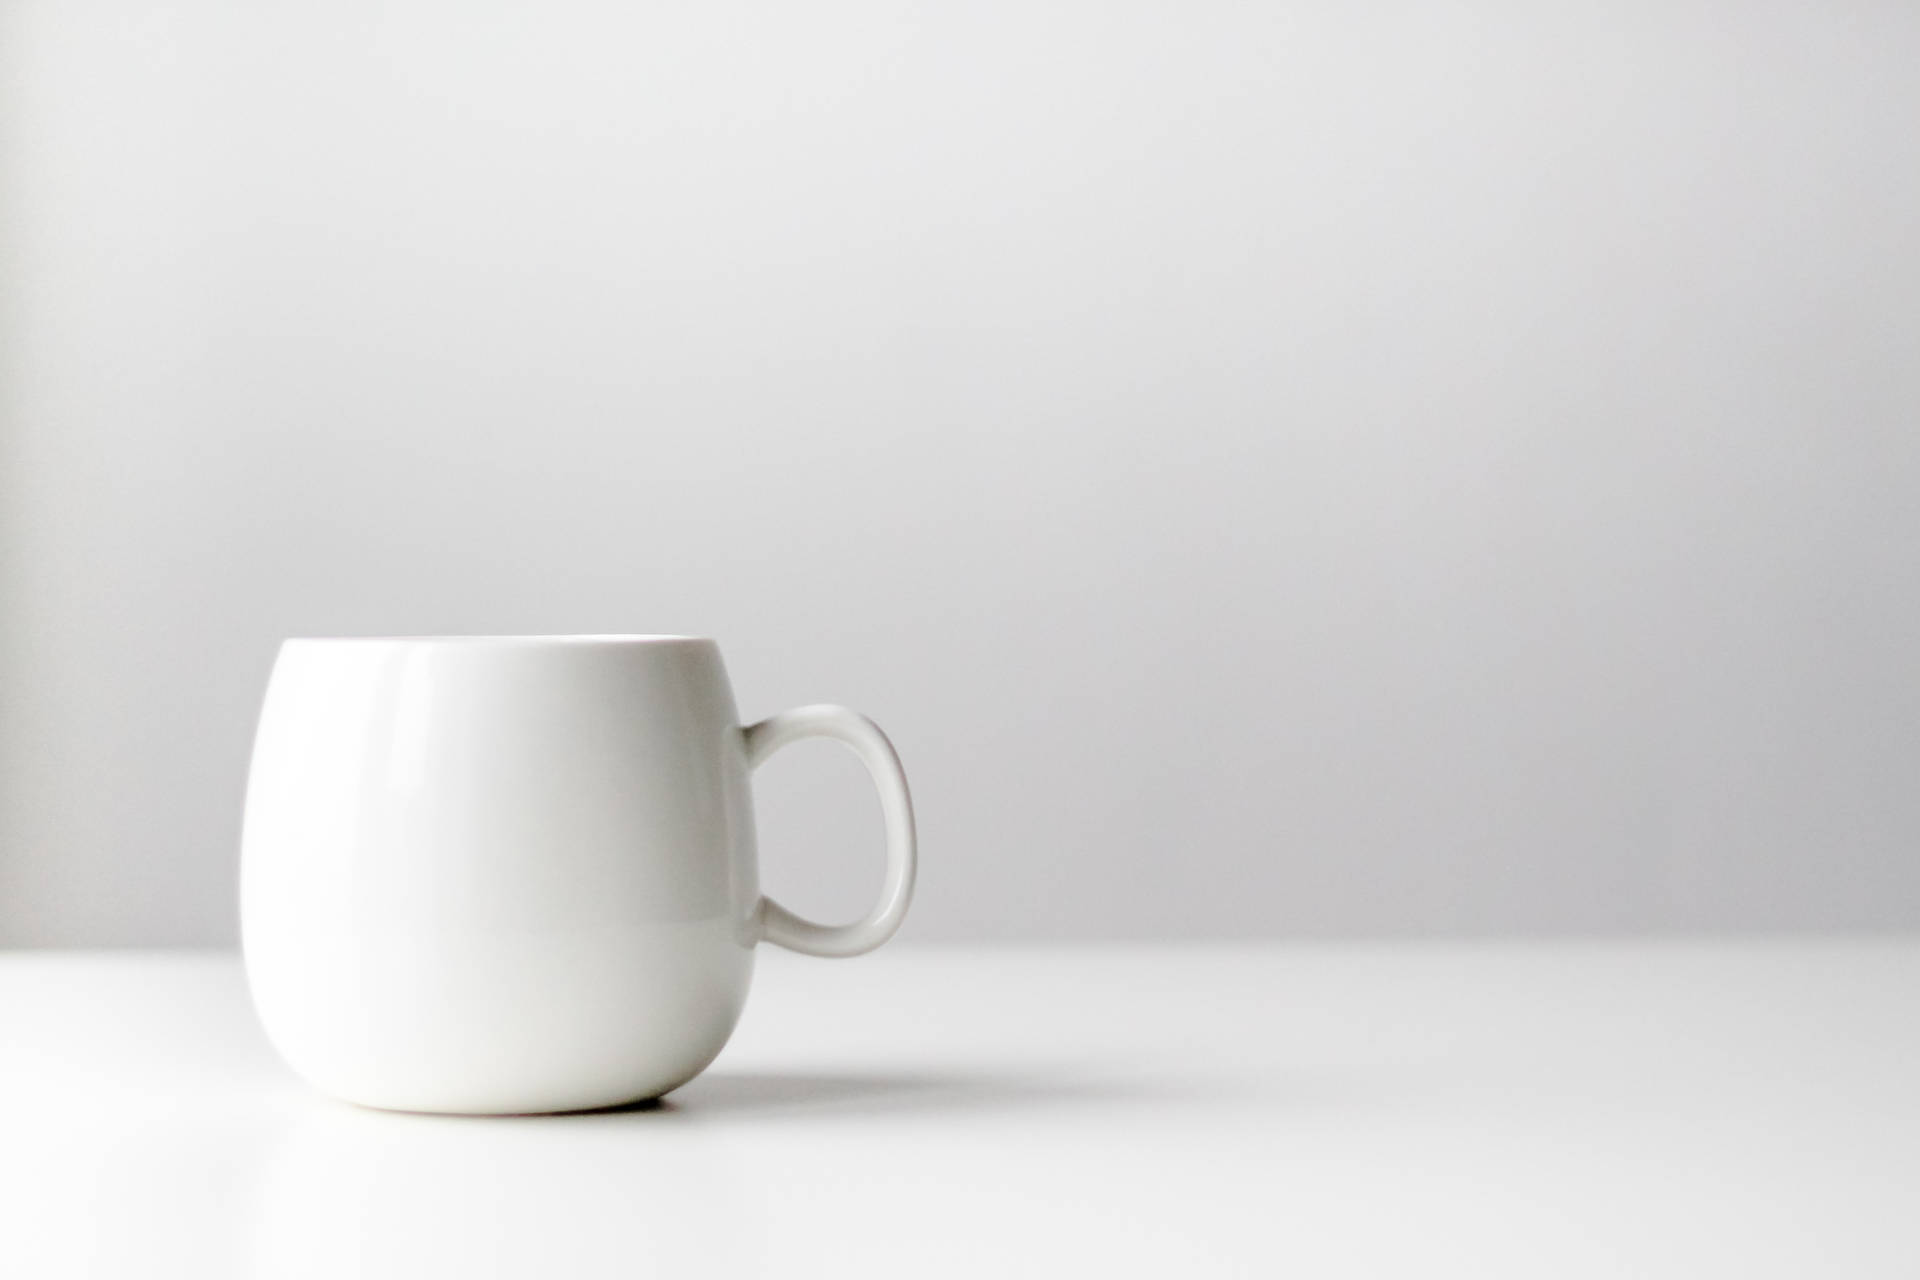 Minimalist White Mug Background